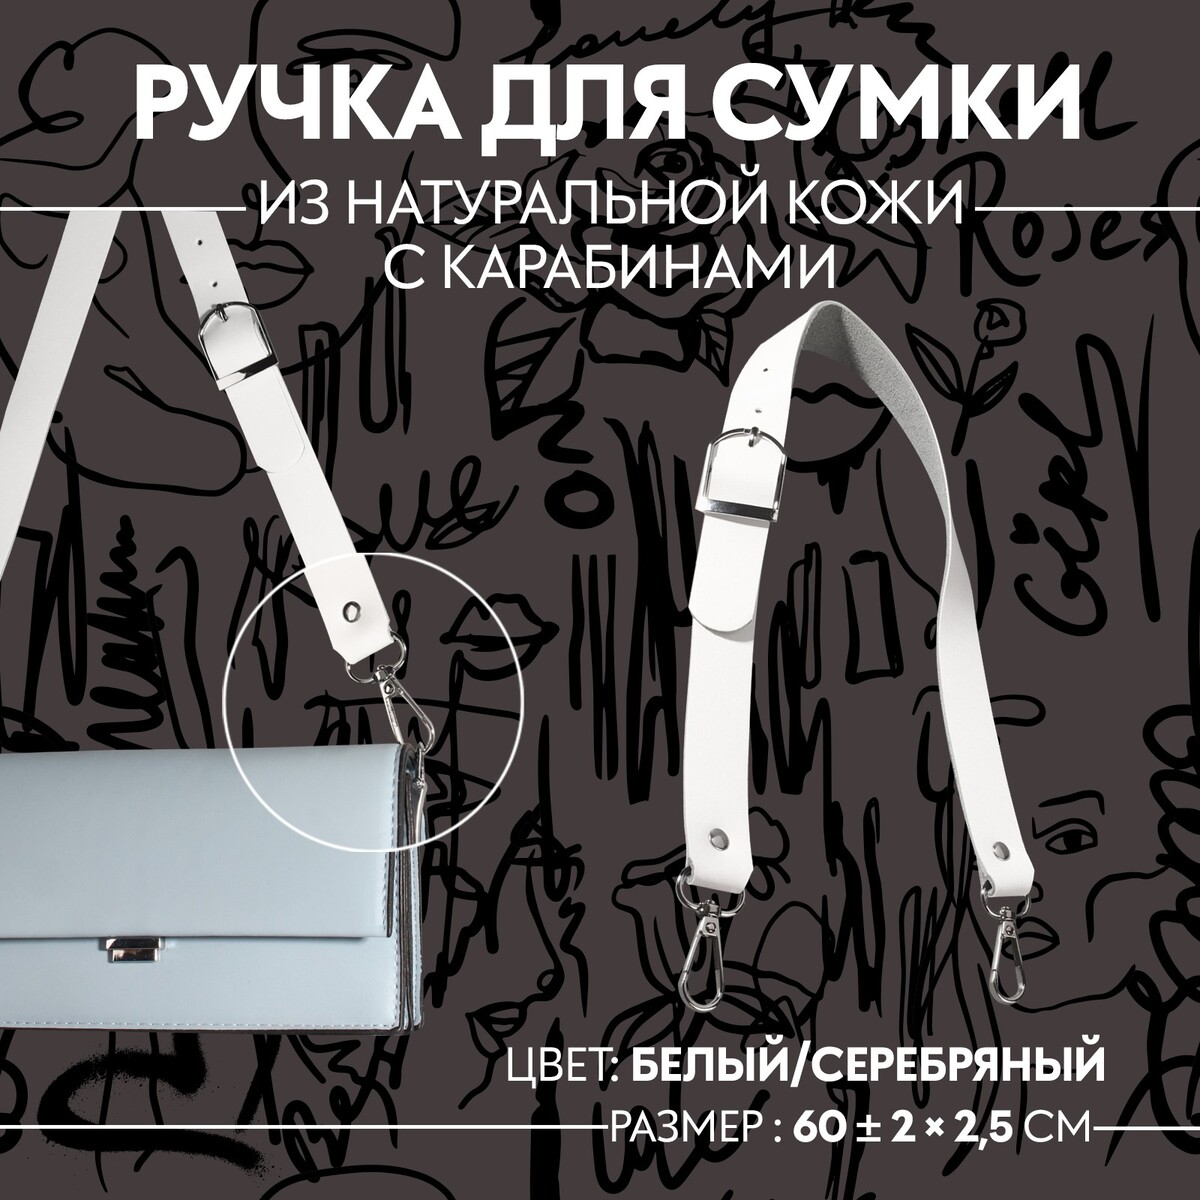 Ручка для сумки из натуральной кожи, регулируемая, с карабинами, 60 ± 2 см × 2,5 см, цвет белый/серебряный белый а т3 серебряный голубь